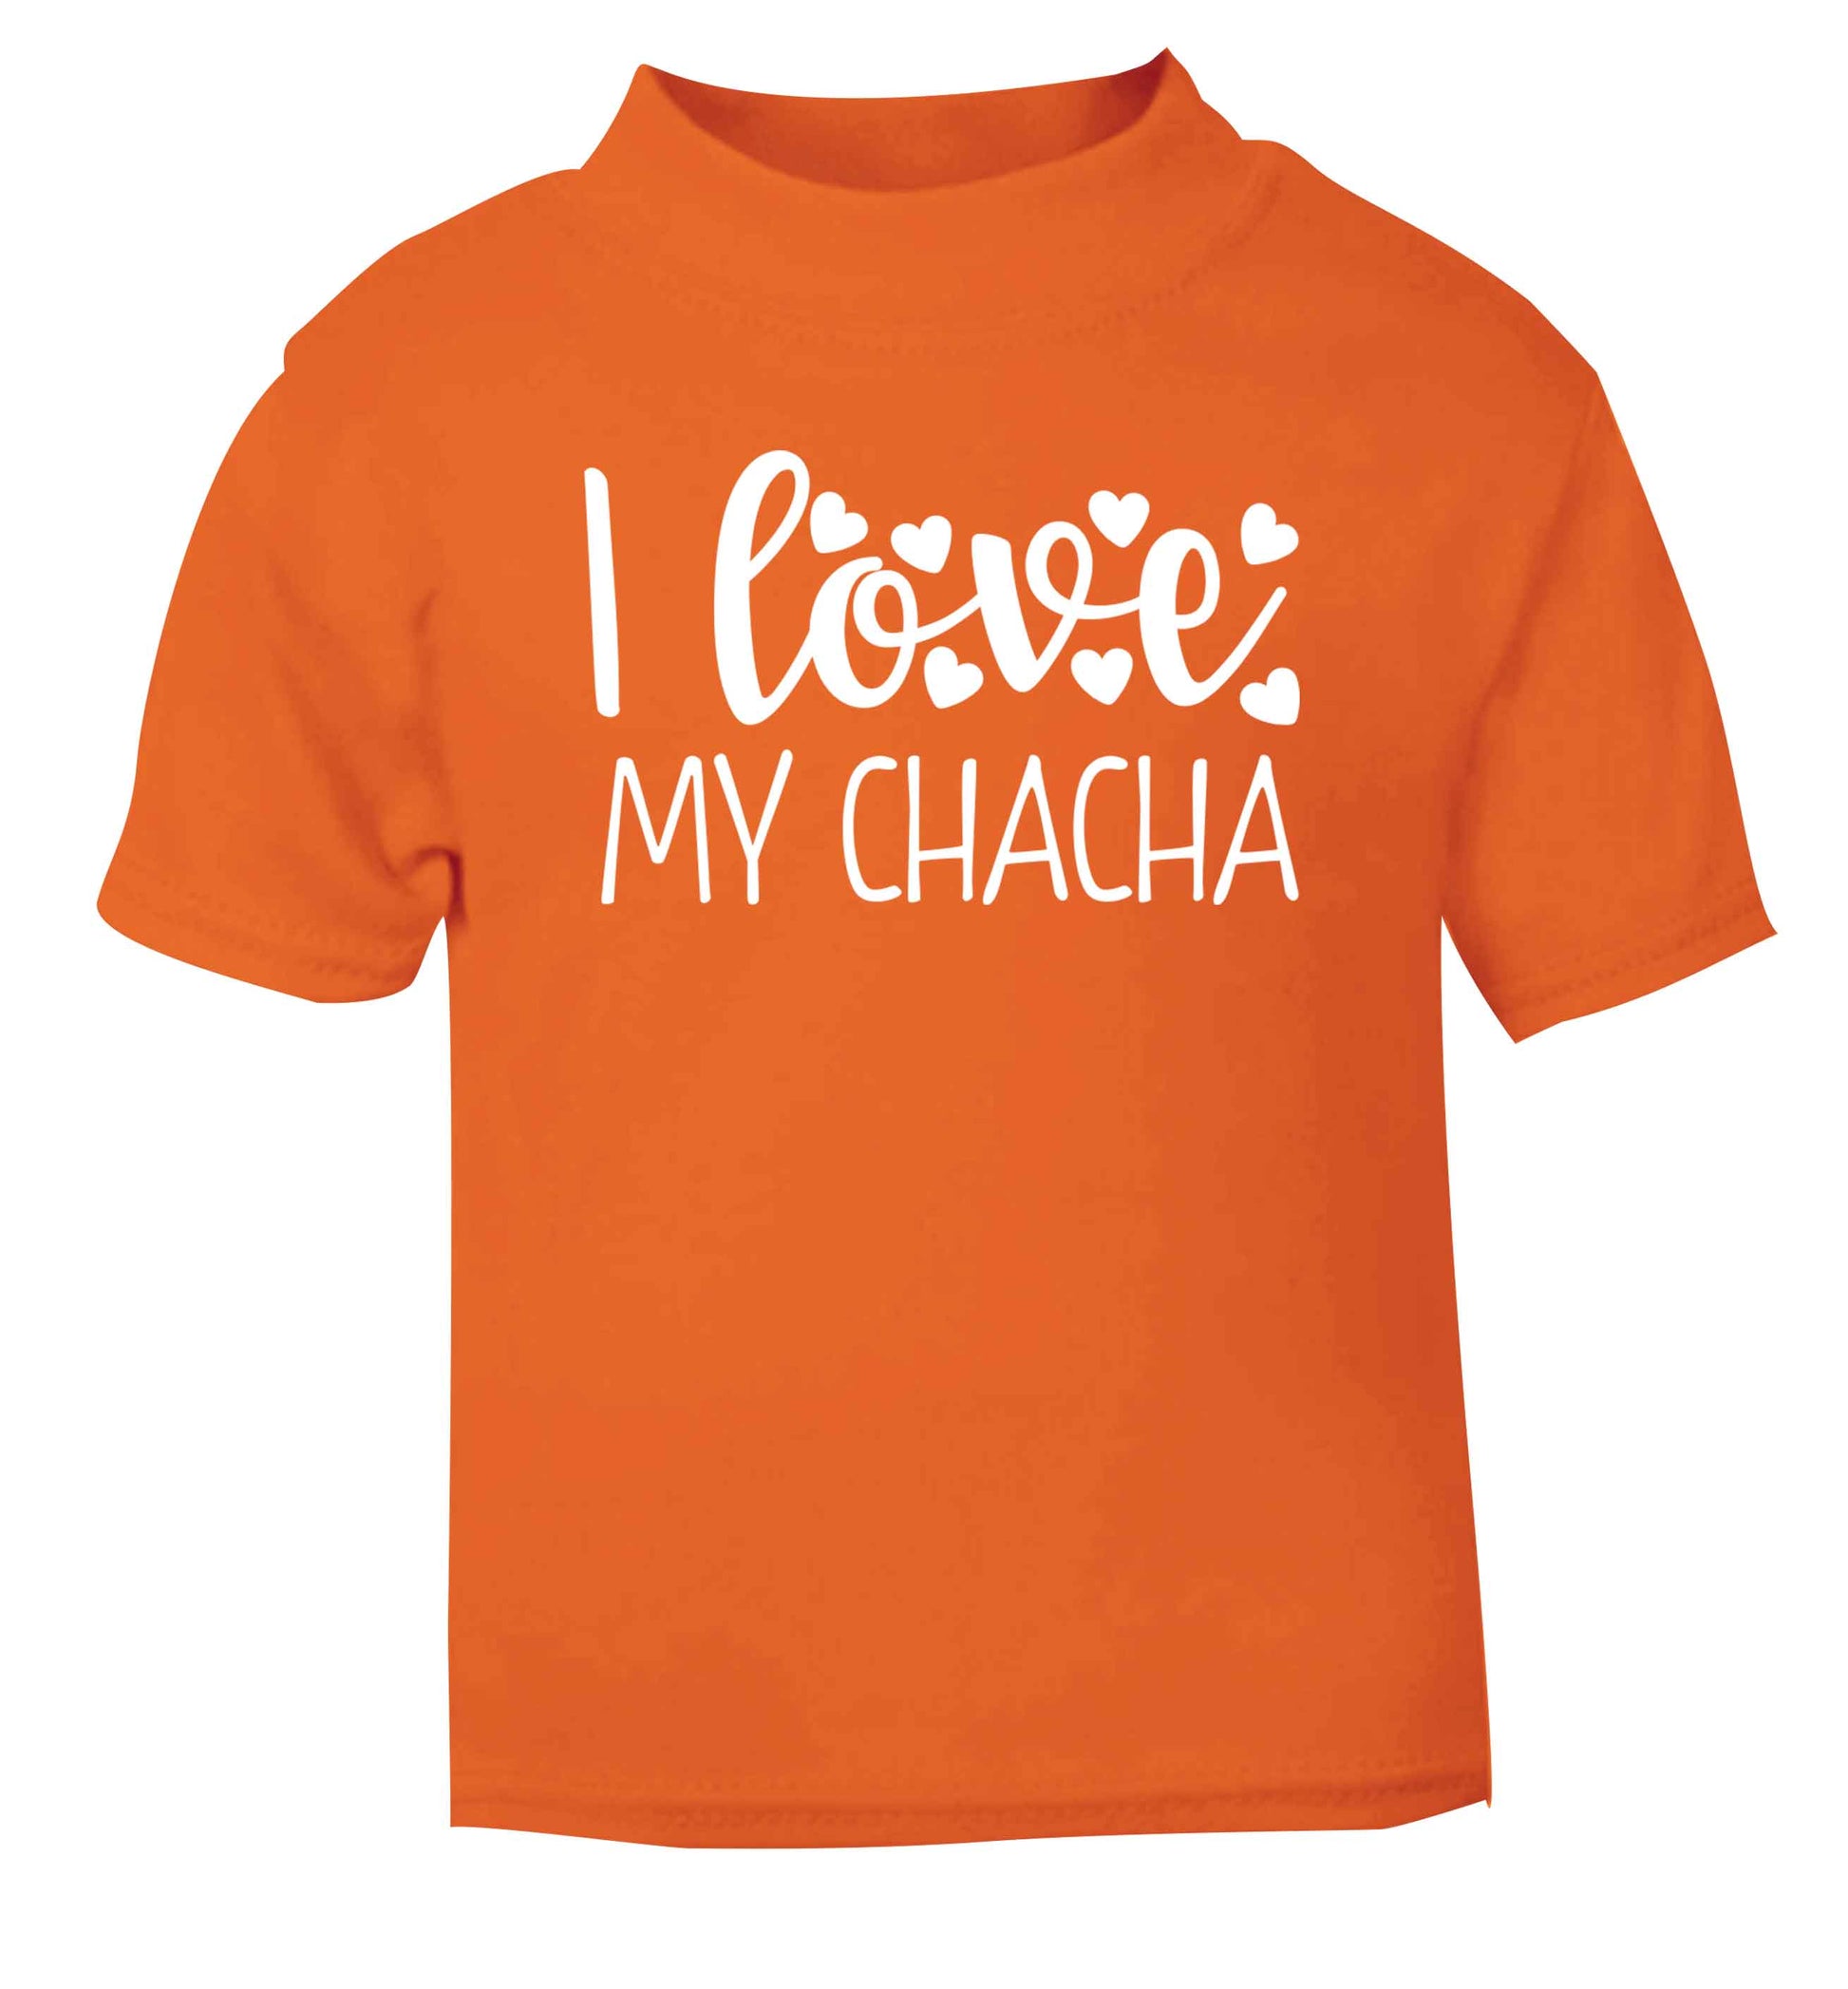 I love my chacha orange Baby Toddler Tshirt 2 Years